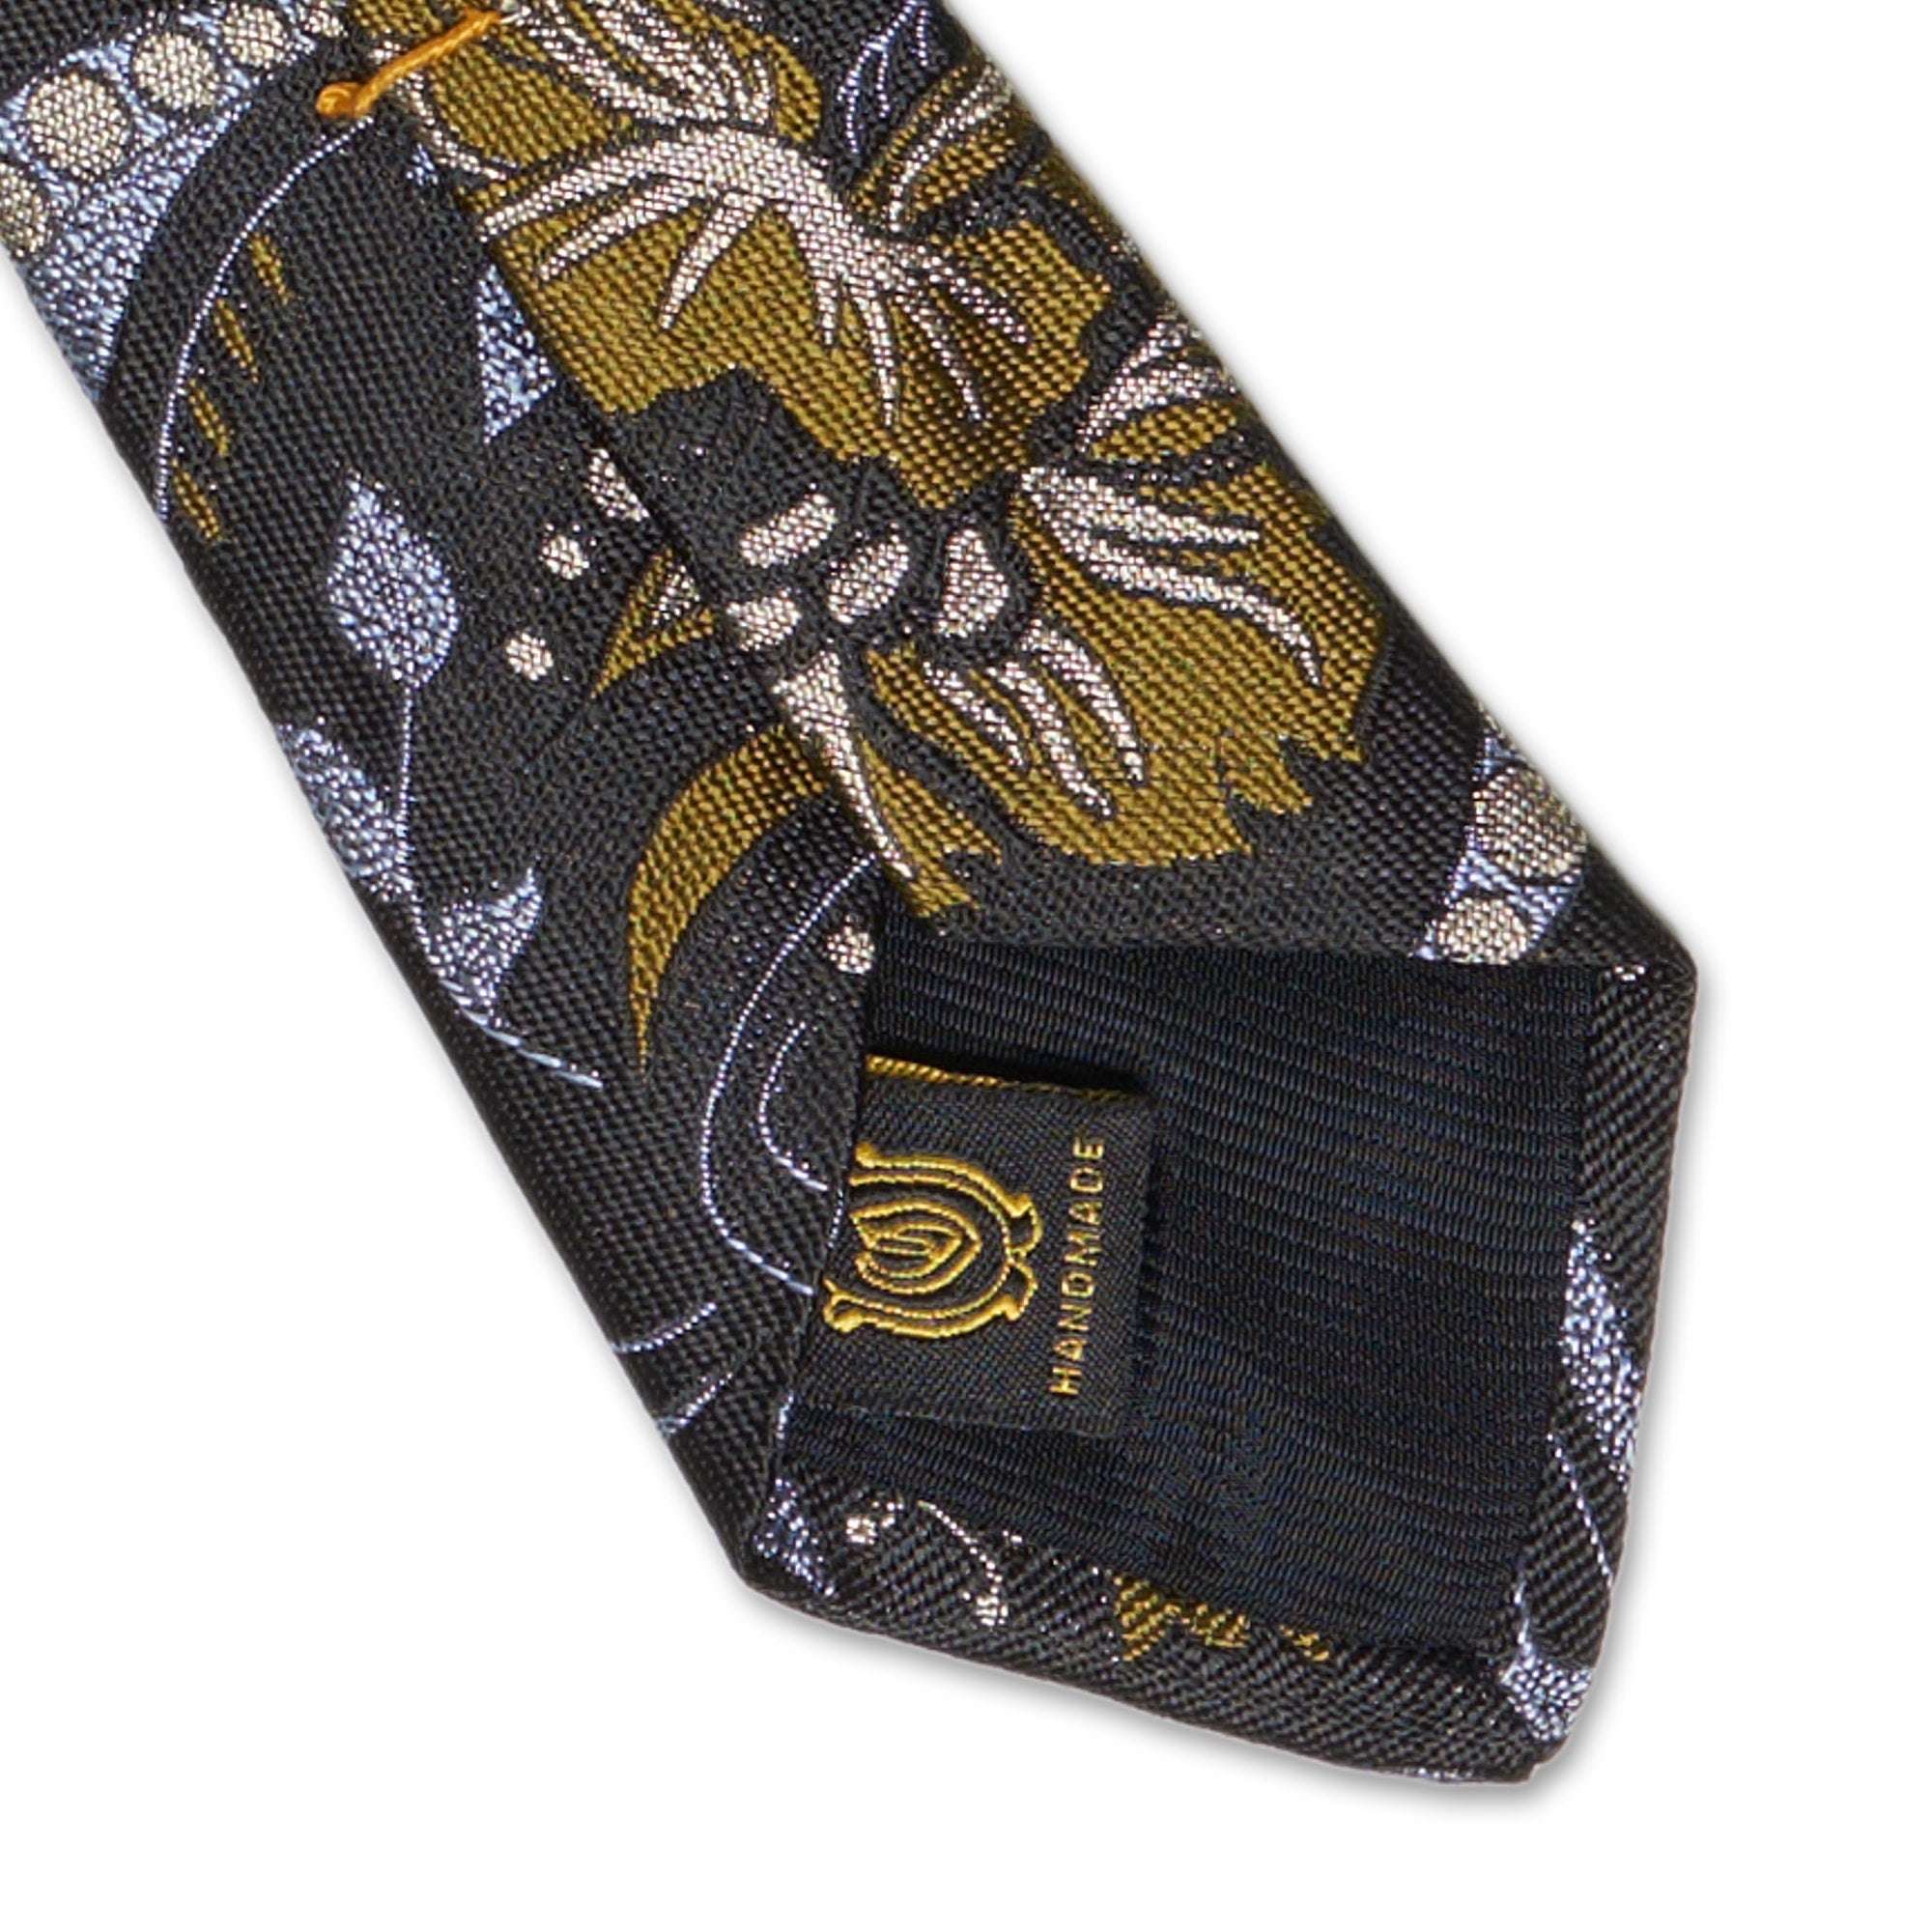 OXXFORD CREST Handmade Black Floral Design Silk Tie OXXFORD CREST